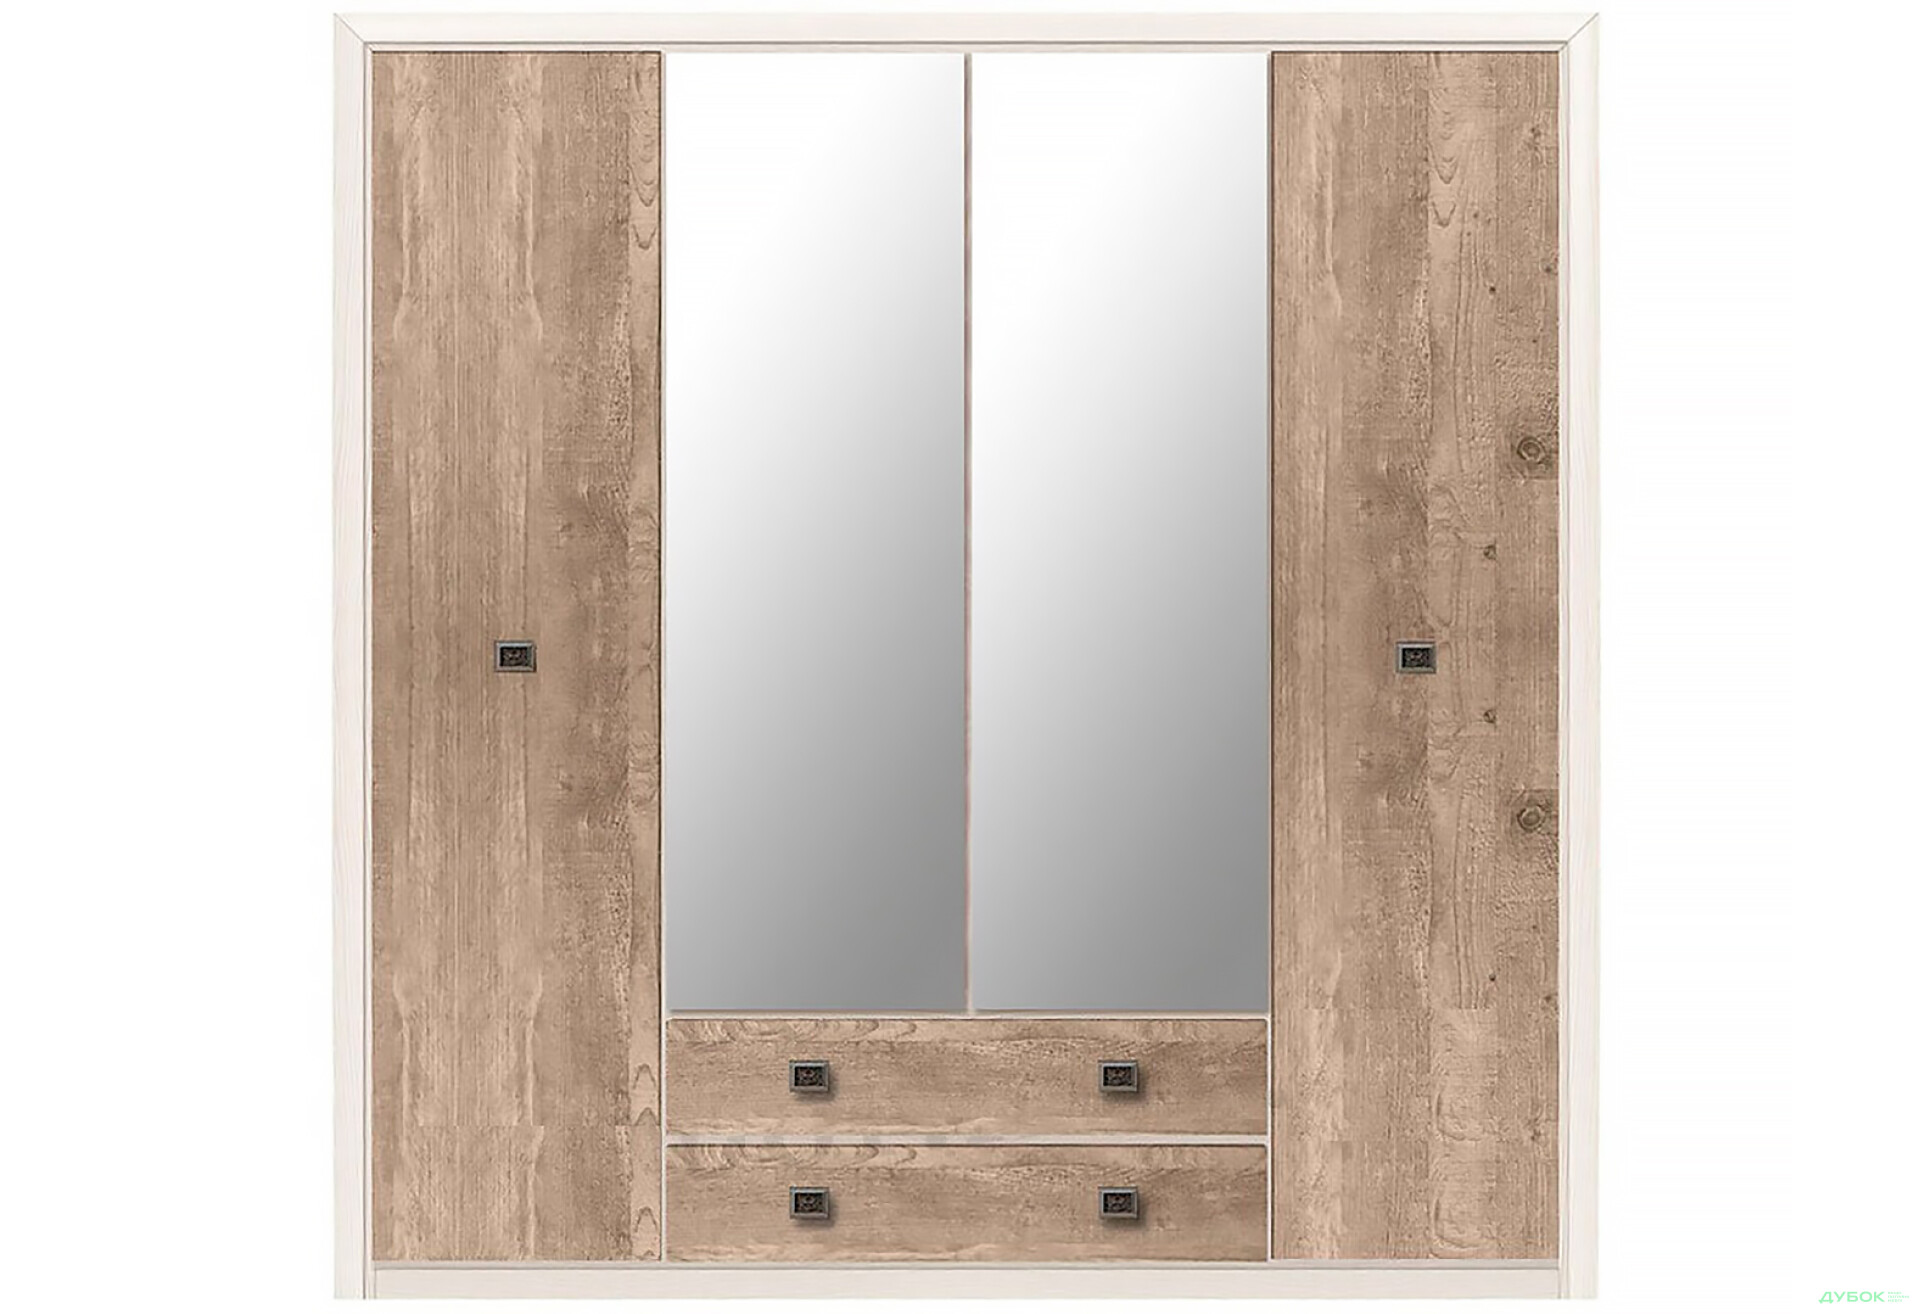 Фото 1 - Шкаф ВМК Коэн II 4-дверный с 2 ящиками и зеркалом 214 см